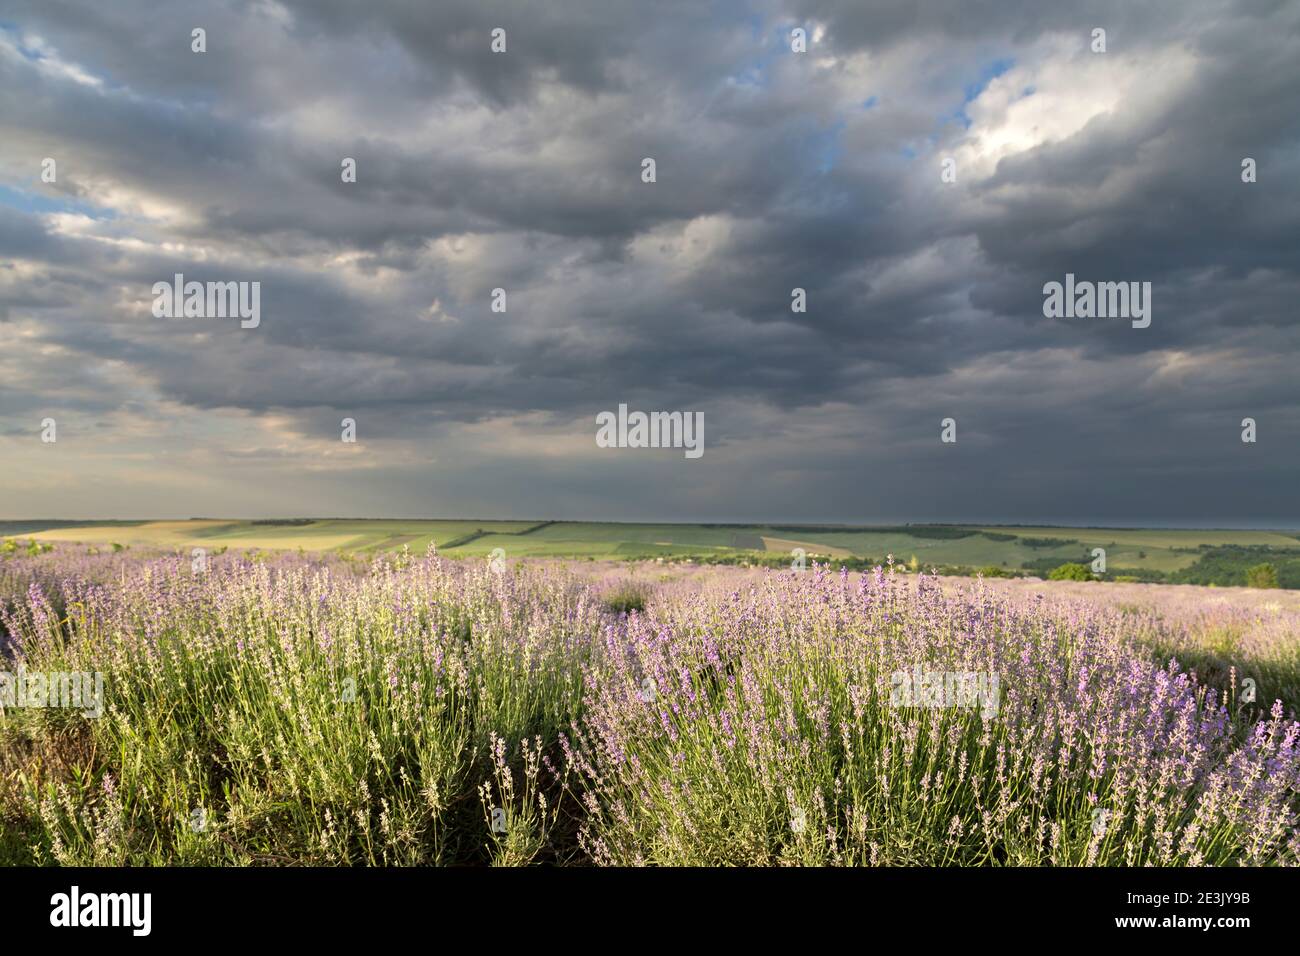 Très belle vue sur les champs de lavande. Une combinaison étonnante d'un ciel sombre et spectaculaire et d'un champ de lavande lumineux. THI est la Moldavie. Banque D'Images